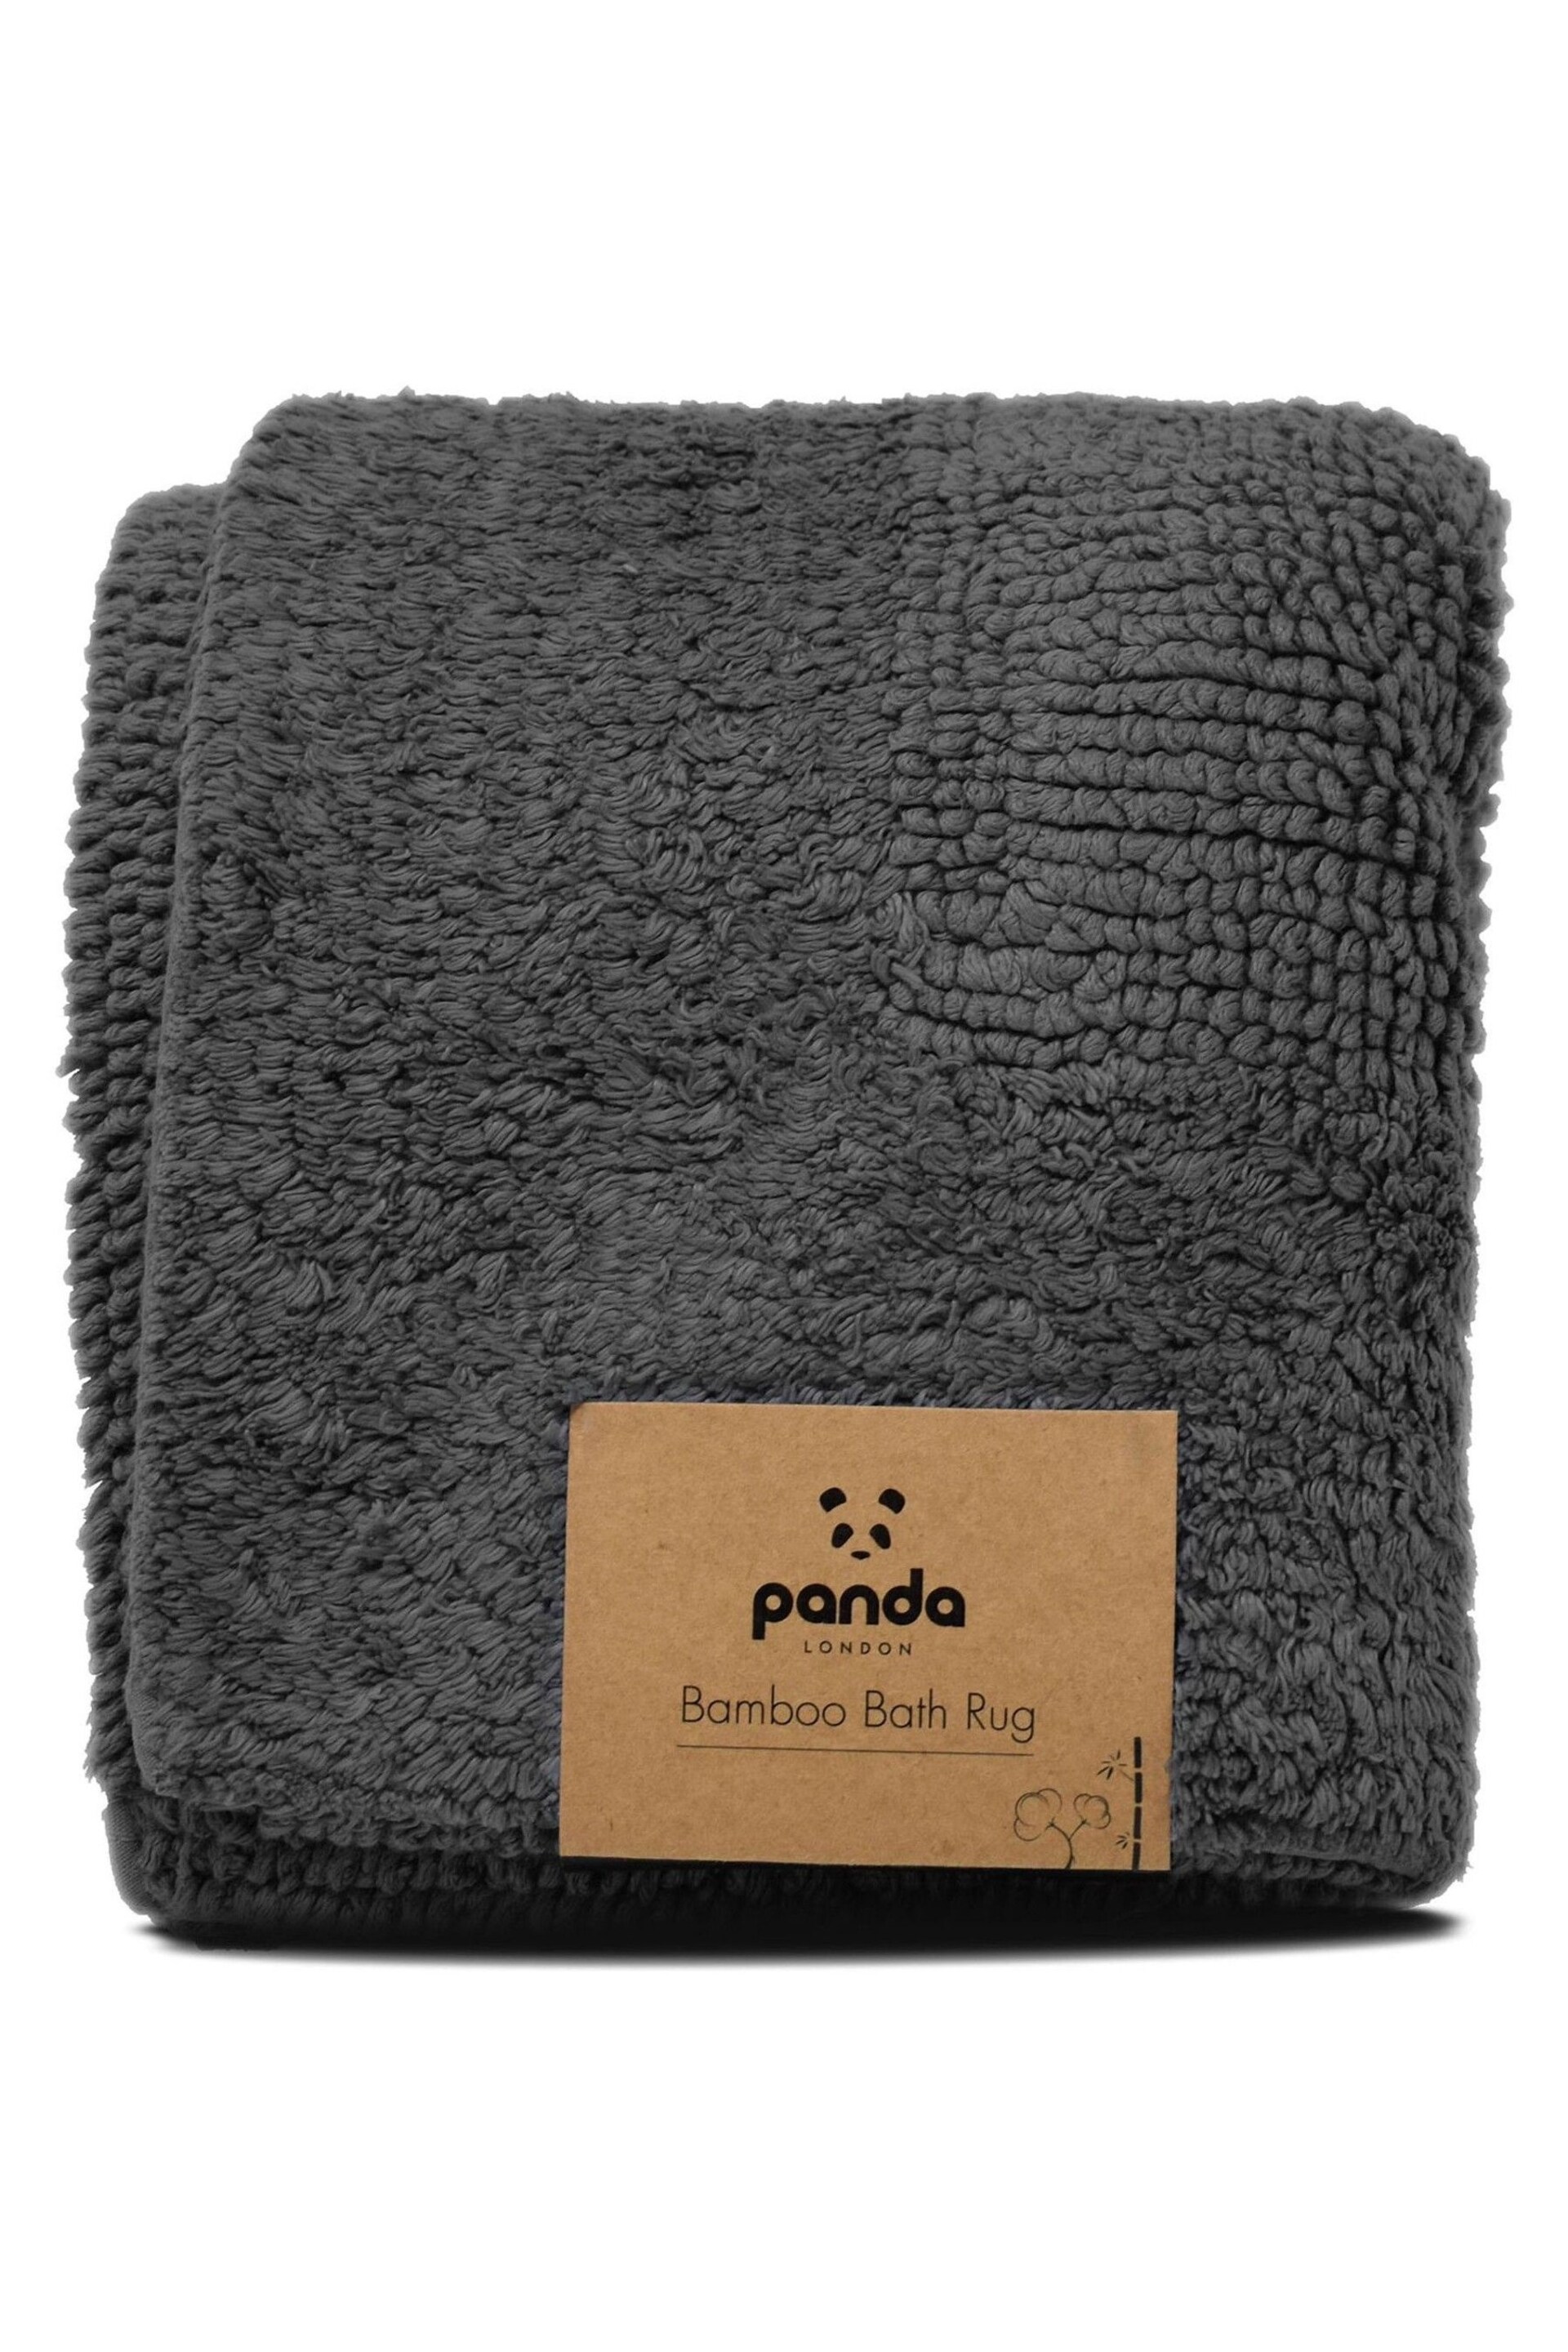 Panda London Grey Bath Mat - Image 7 of 7